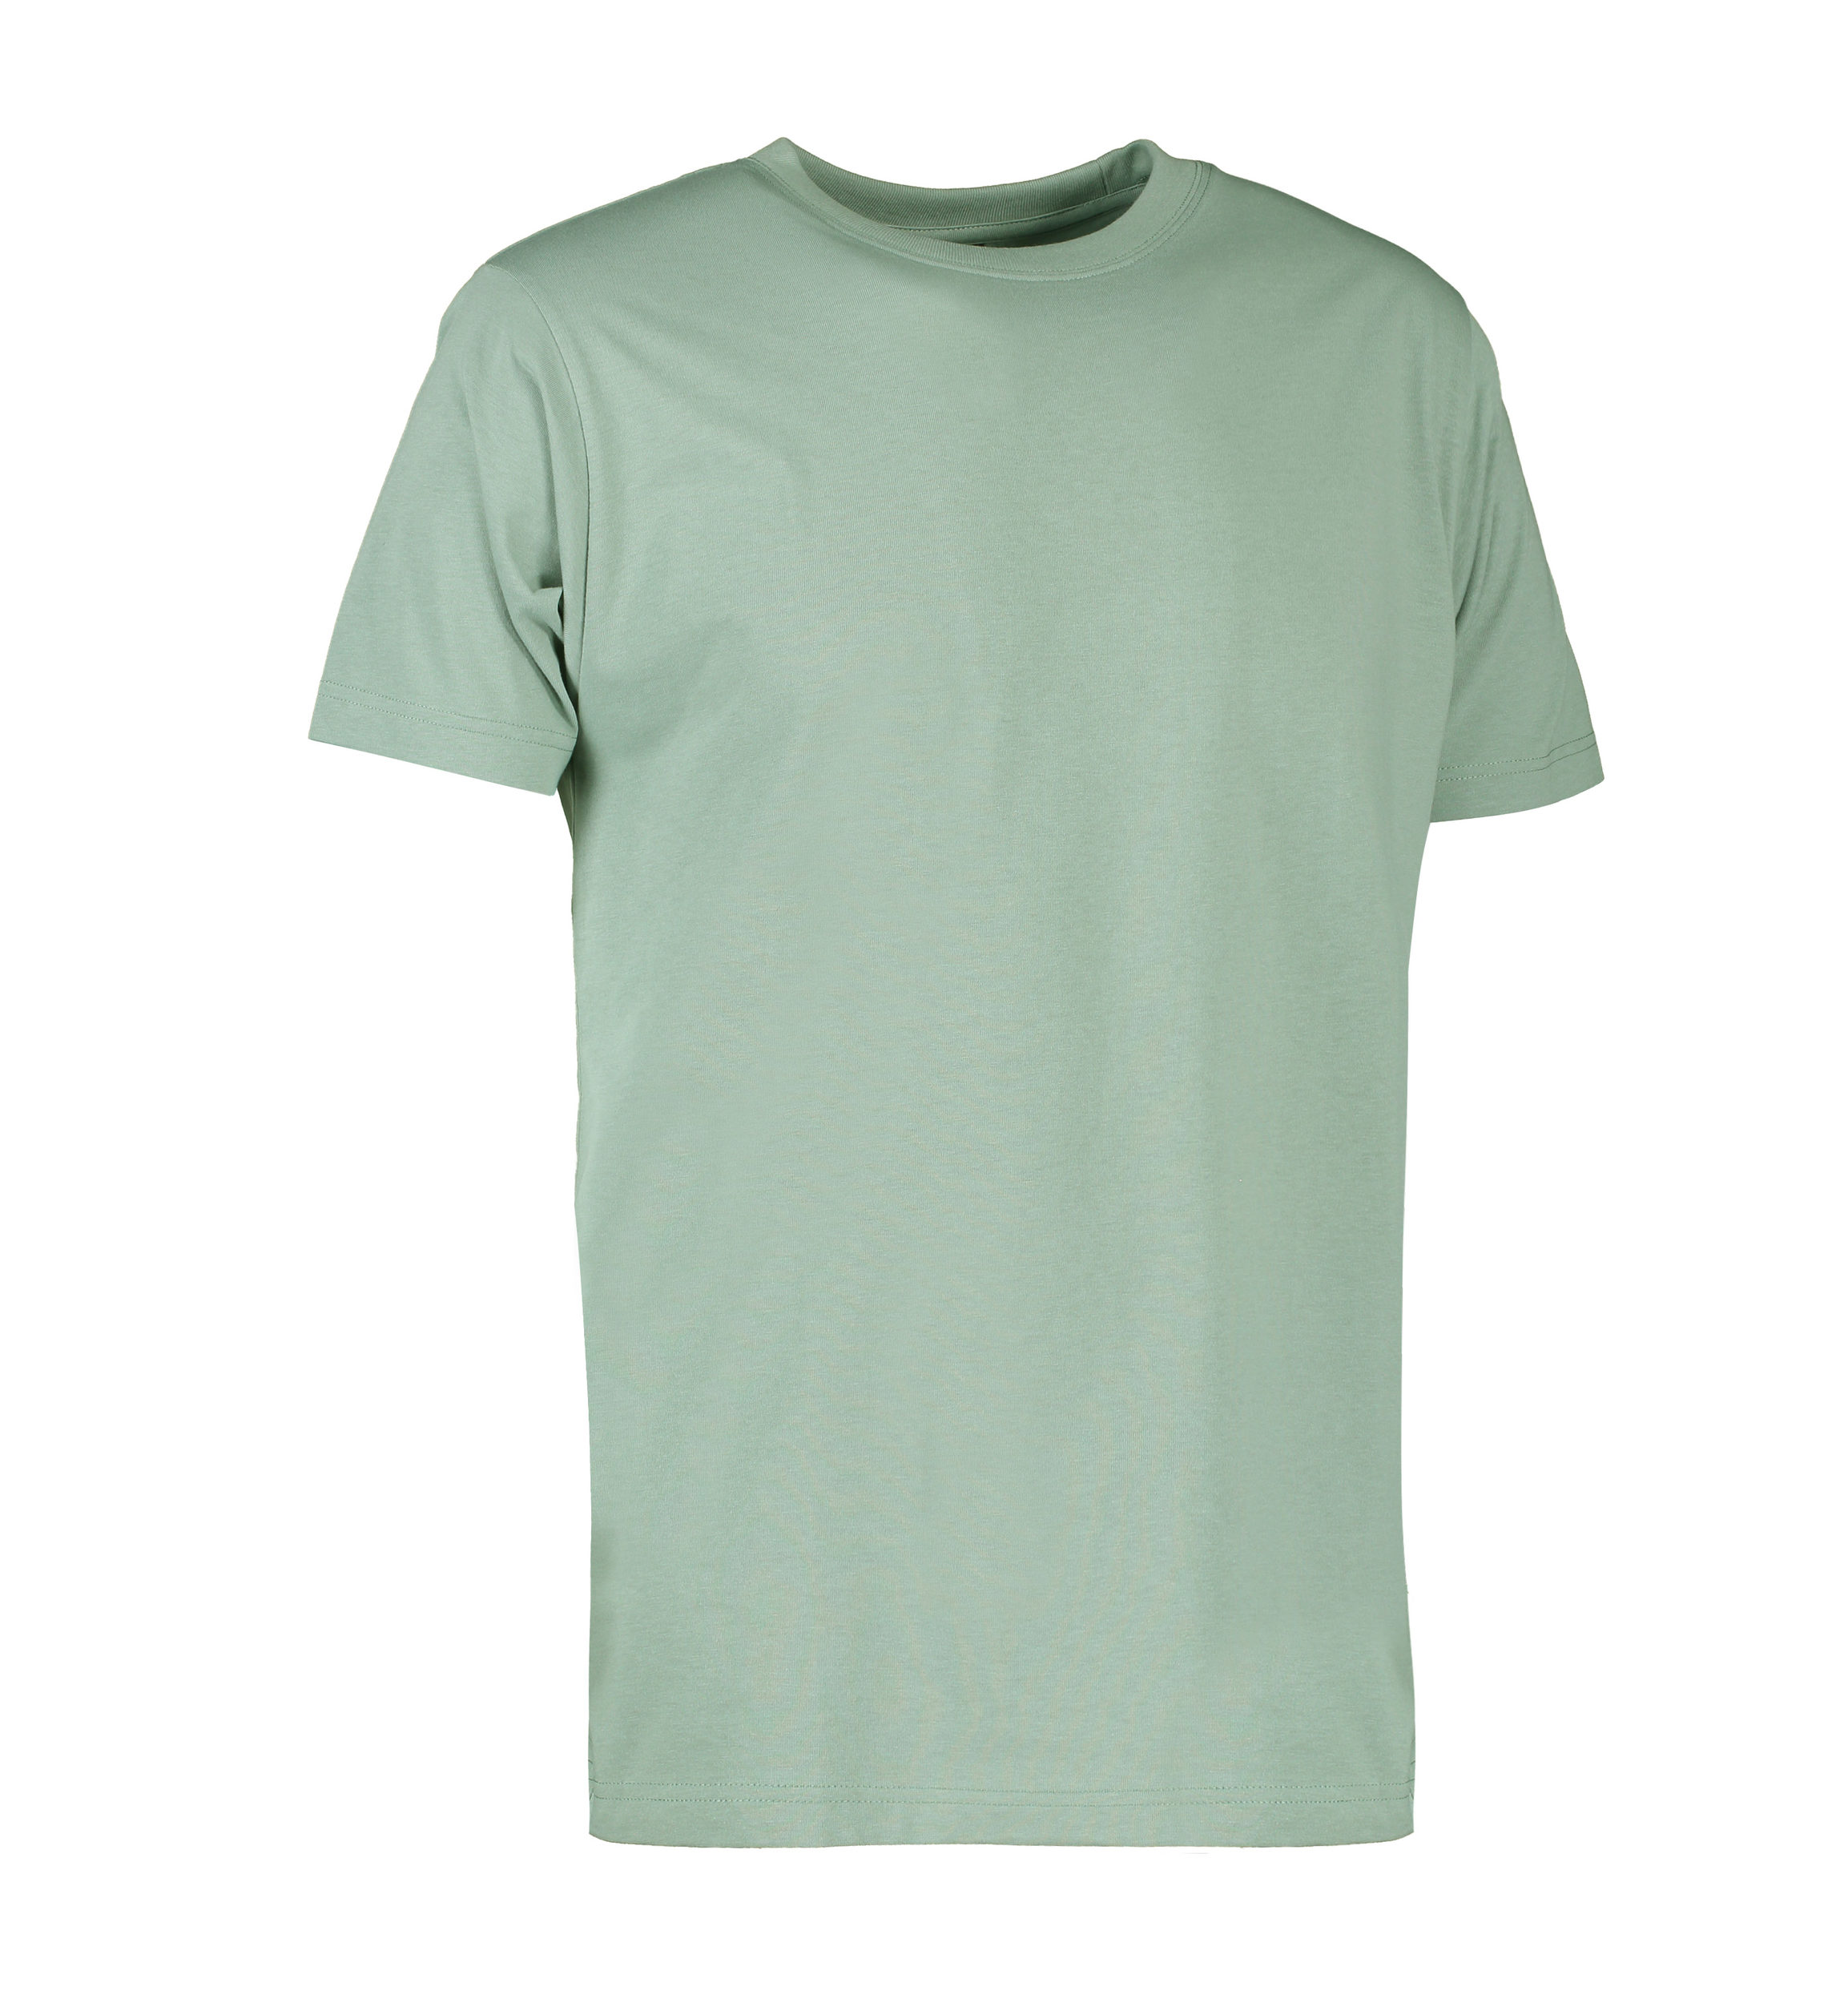 Se Slidstærk t-shirt i støvet grøn til mænd - S hos Sygeplejebutikken.dk